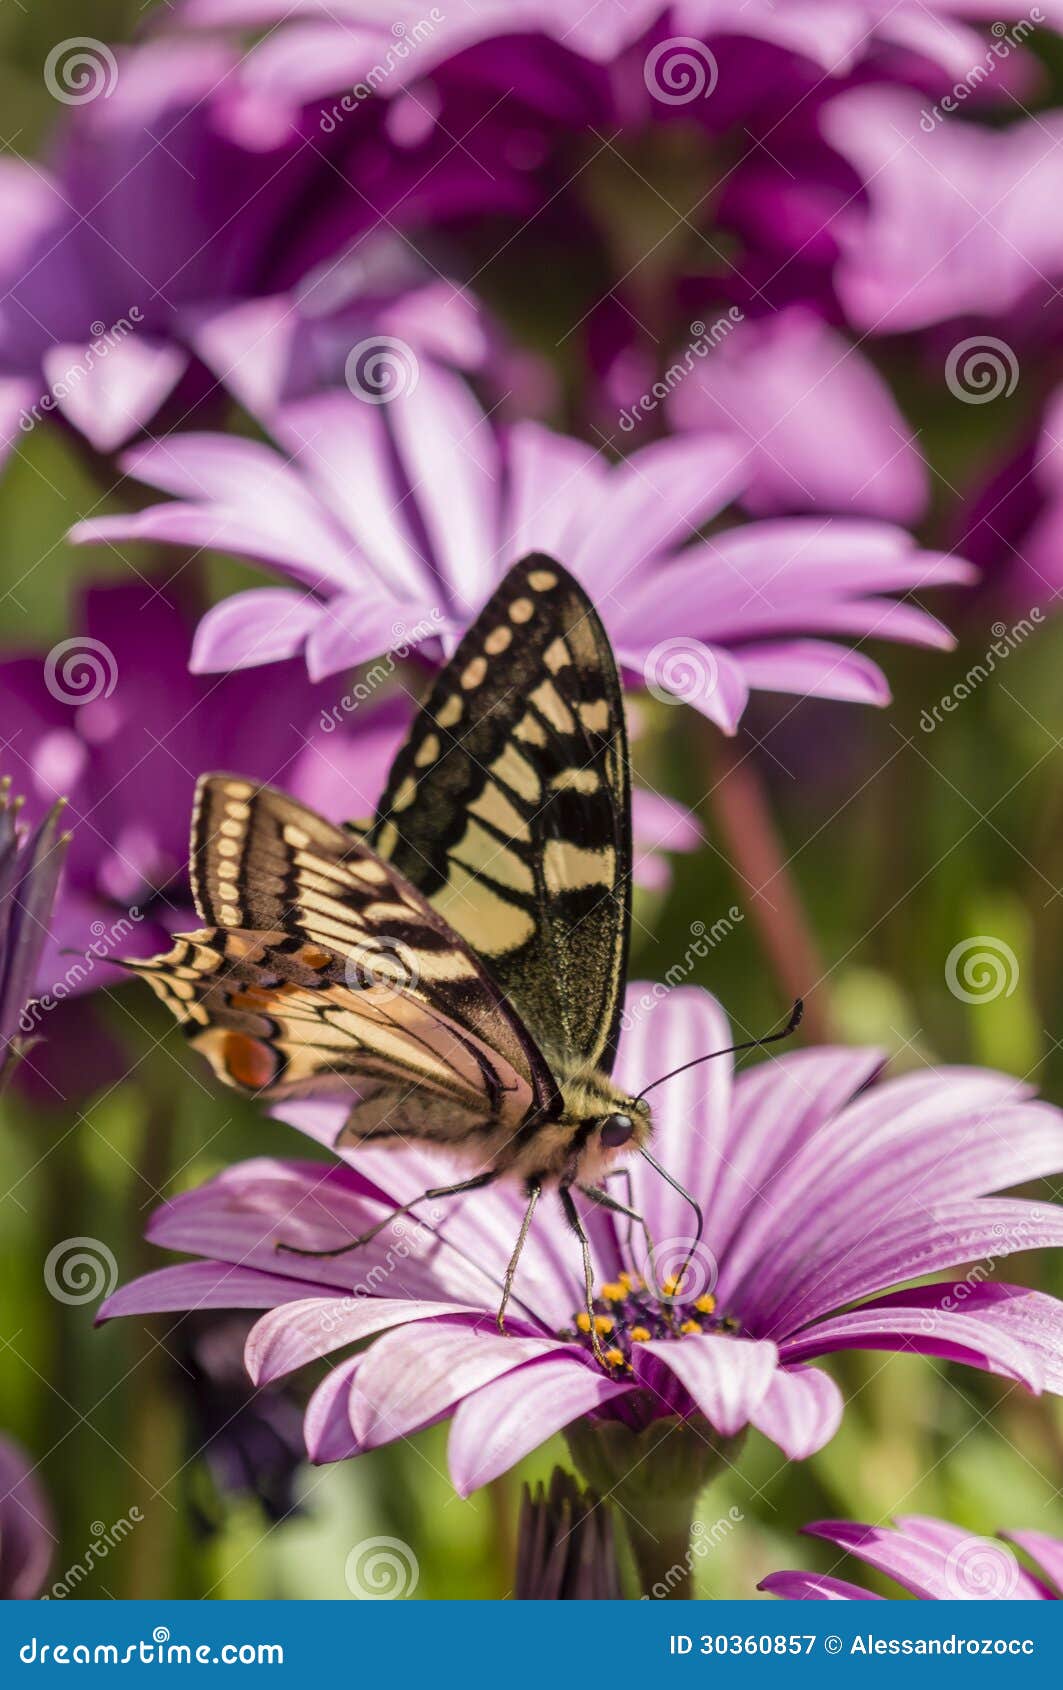 swallowtail butterfly in a purple daisy field